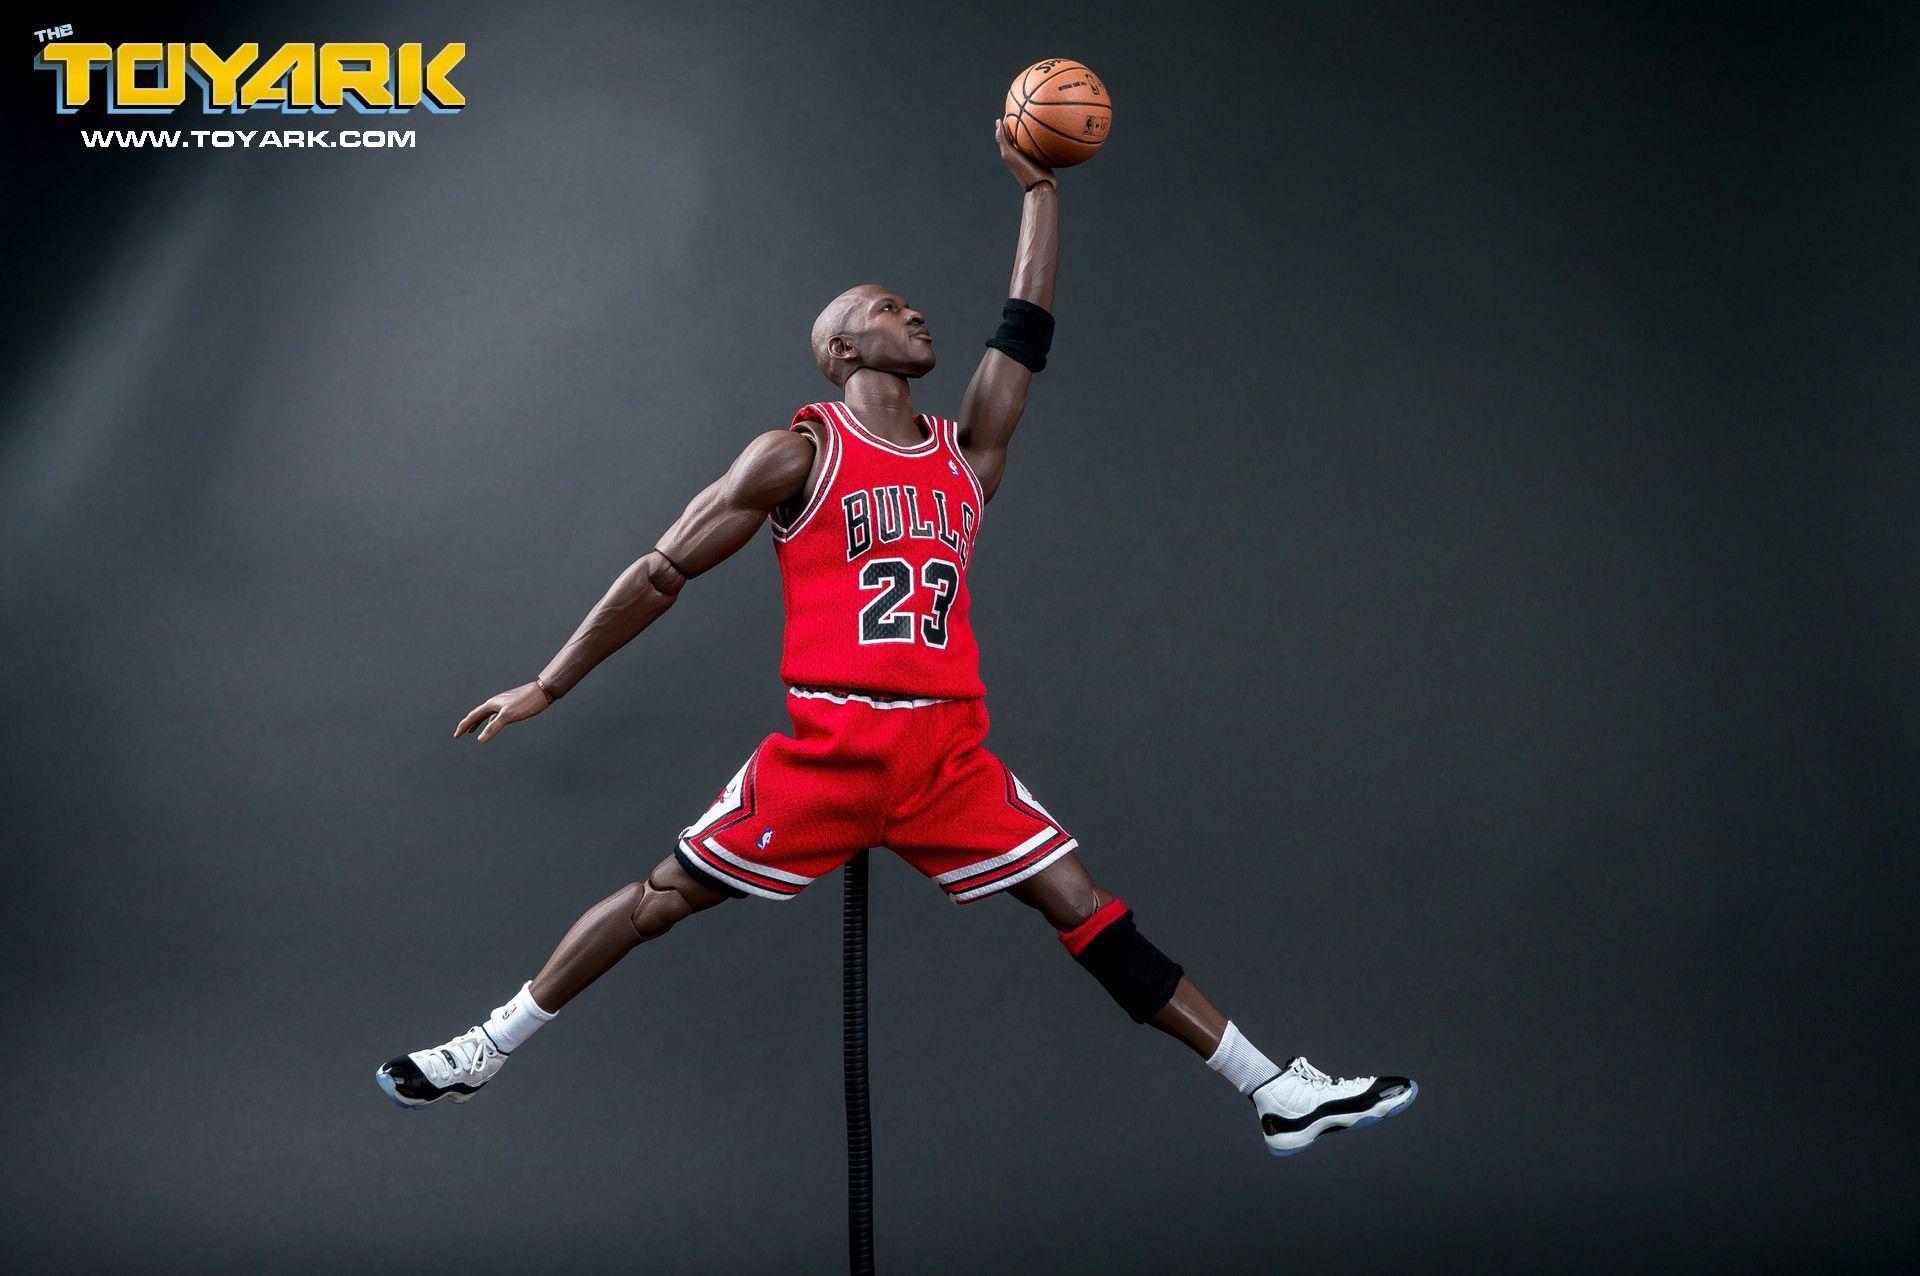 Michael Jordan Jumpman Hd Beautiful Basketball Wallpapers Make Sure To